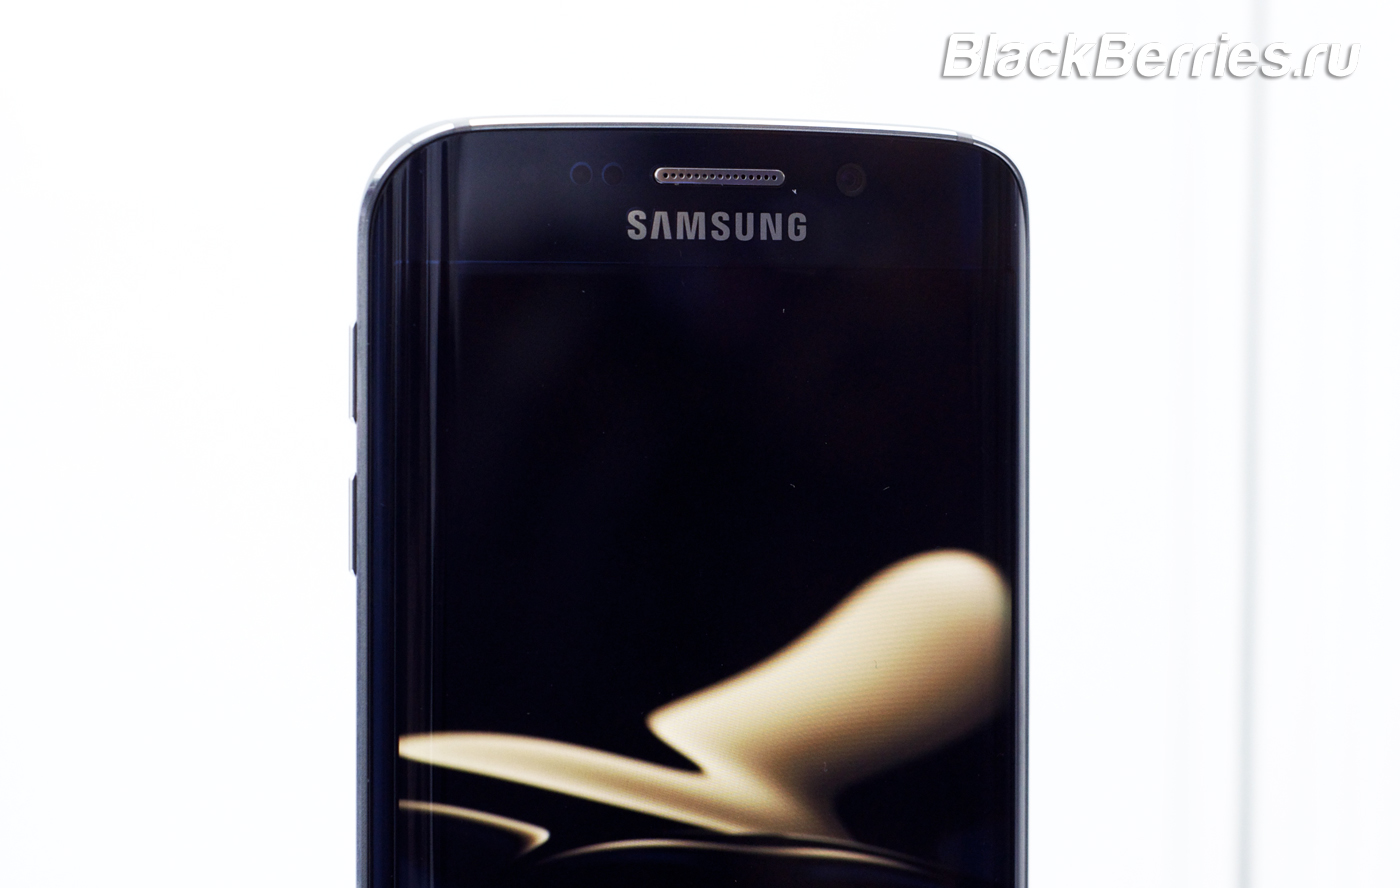 Samsung-Galaxy-S6-9